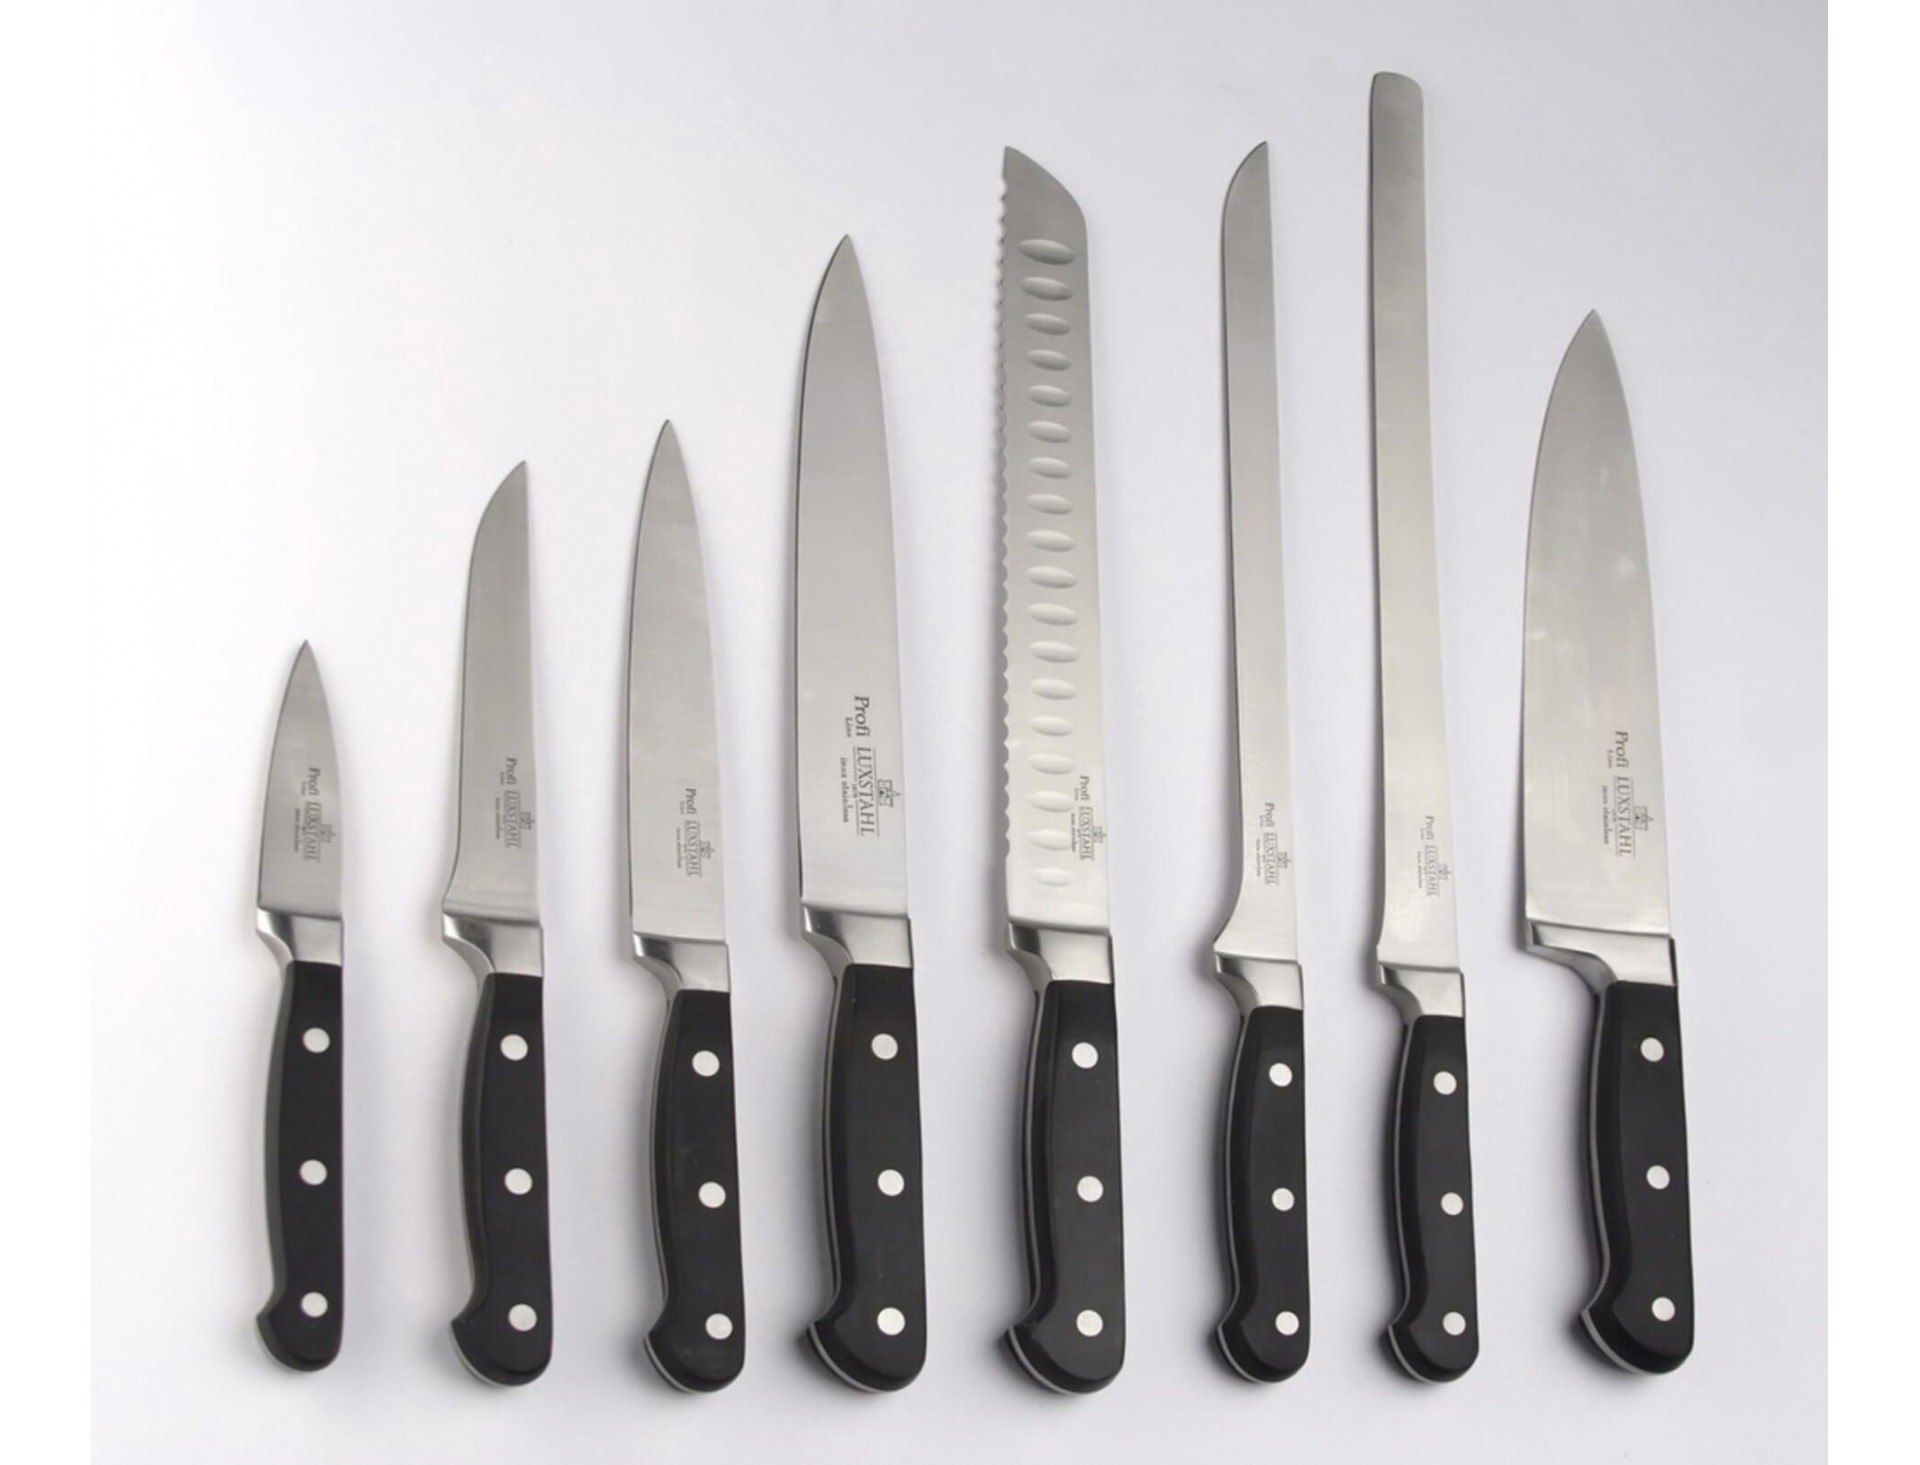 Ножевые компании. Ножи Luxstahl «Profi». Profi line Luxstahl 1879 inox Stainless нож. Luxstahl 1879. Нож Luxstahl 1879 3cr14 hrc53.